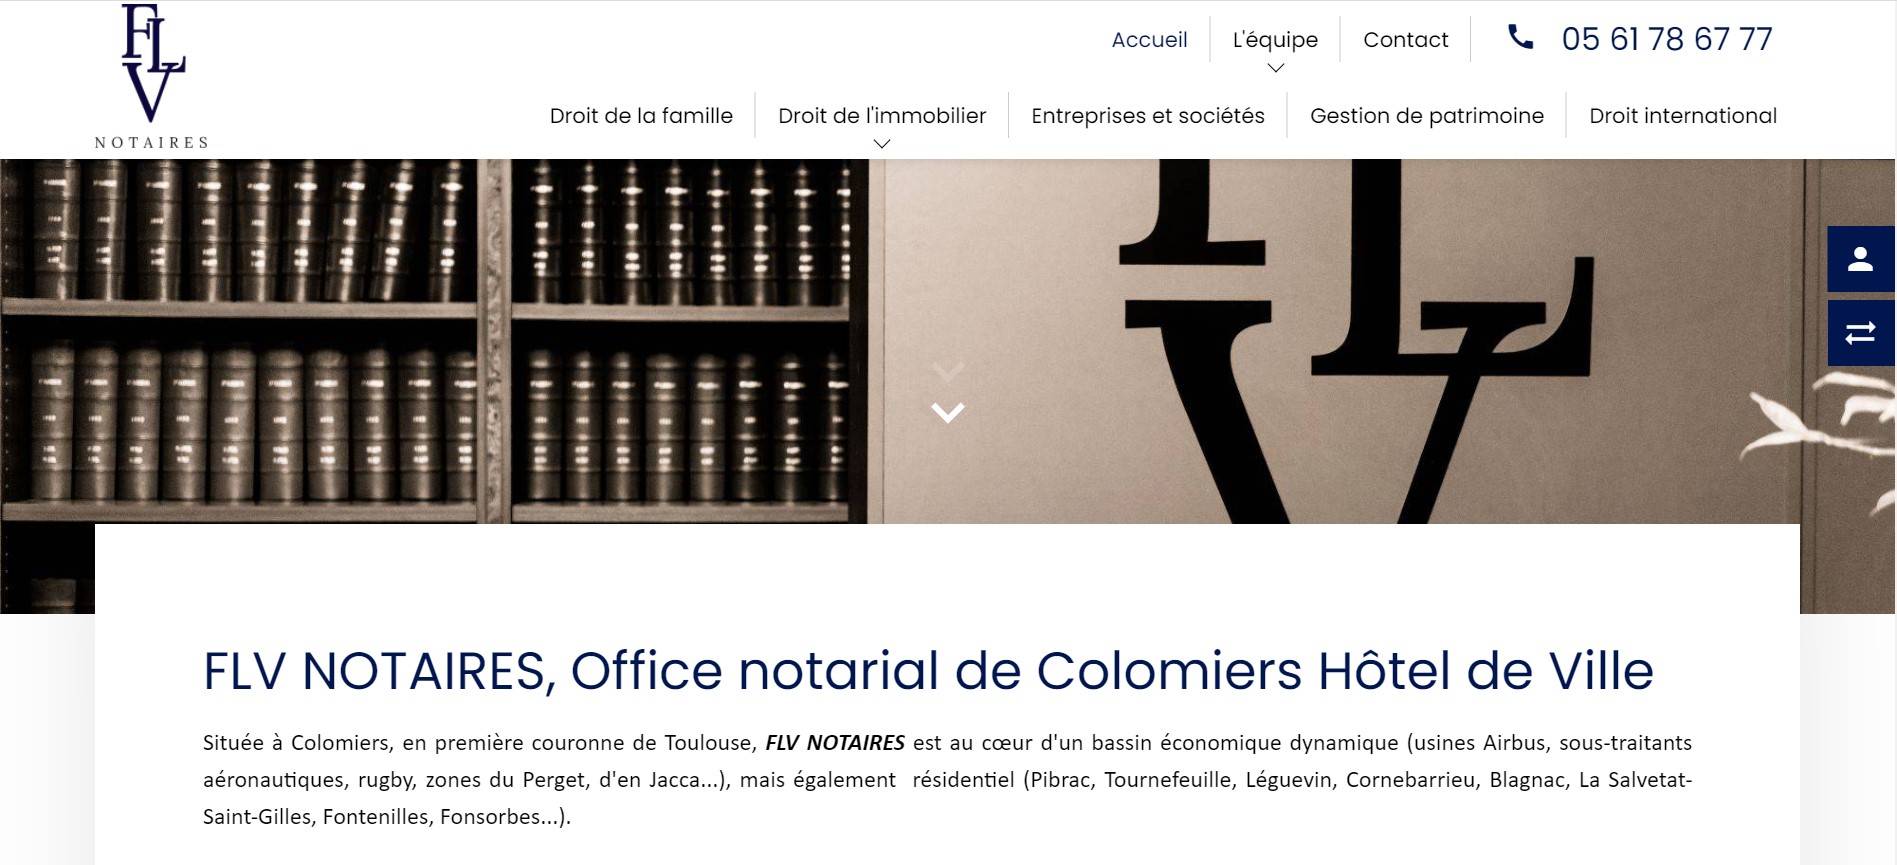 Office notarial pour particuliers et entreprise à Colomiers - Garrigou - Faure - Legrigeois - Vaniscotte